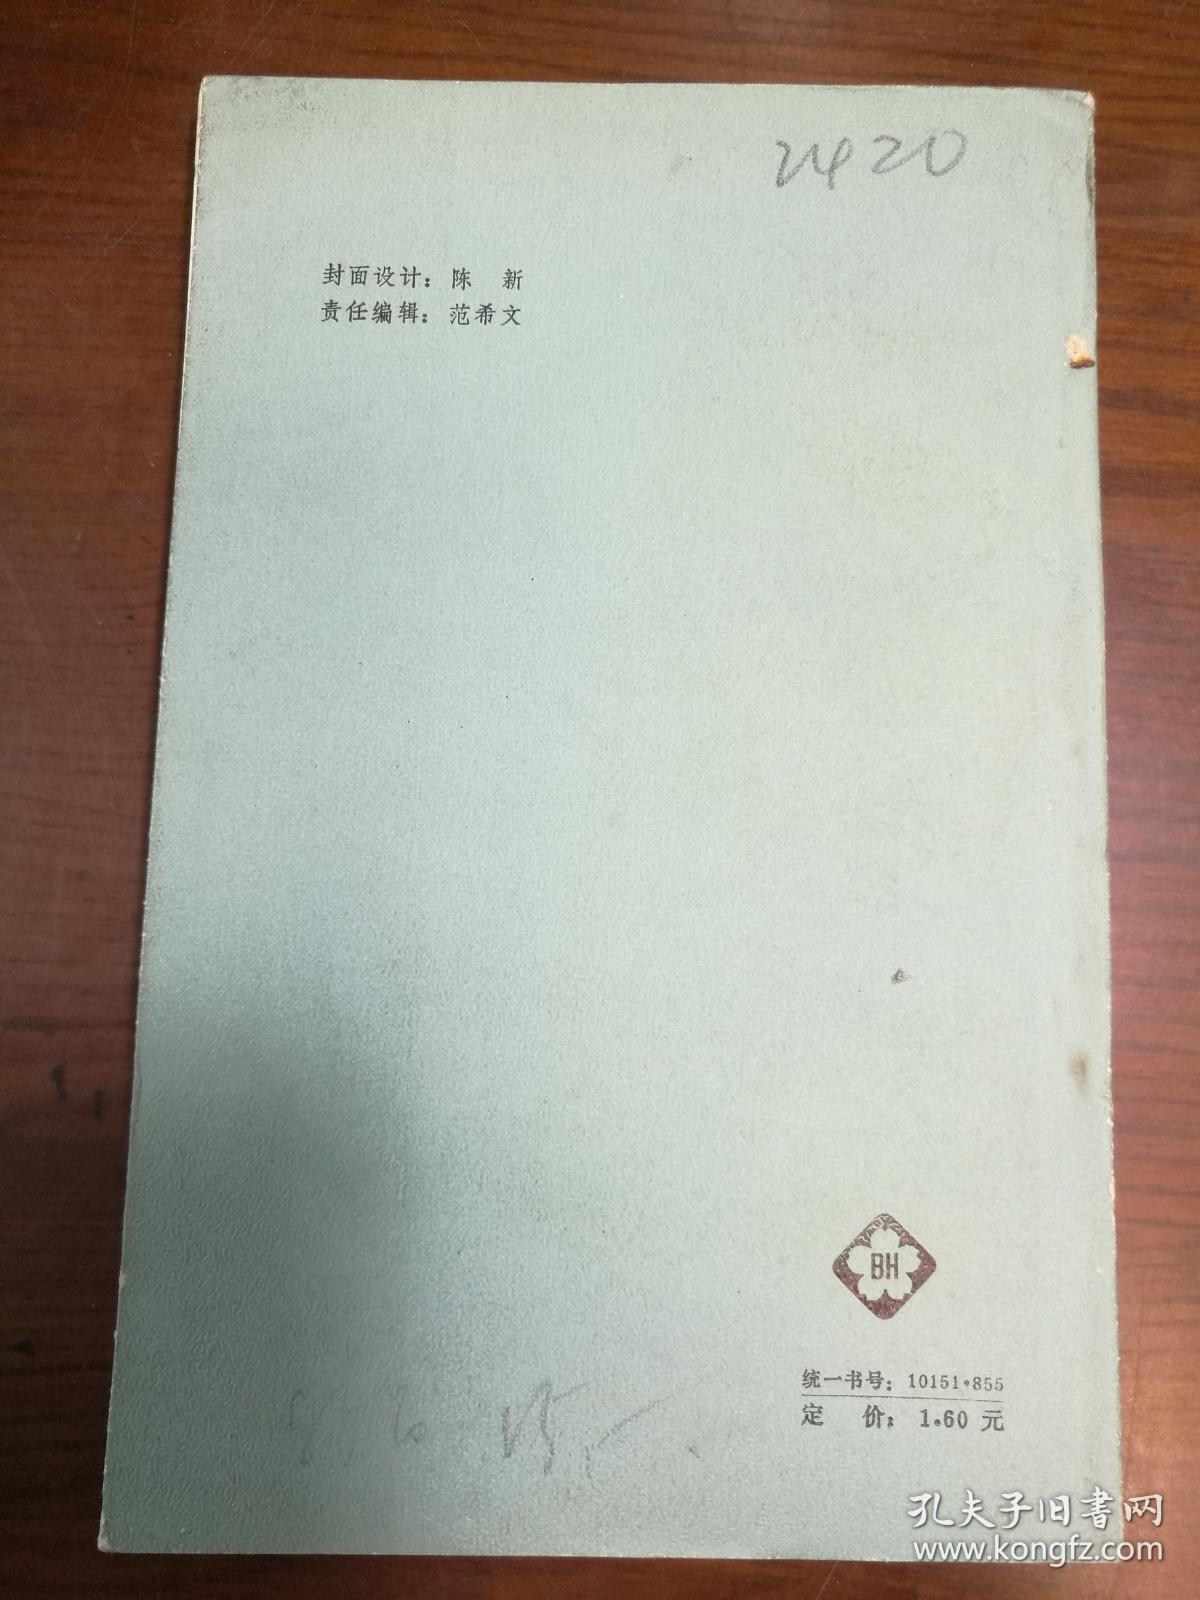 D0768     何其芳散文选集  全一册    百花文艺出版社  1986年5月  一版一印  仅印3200册